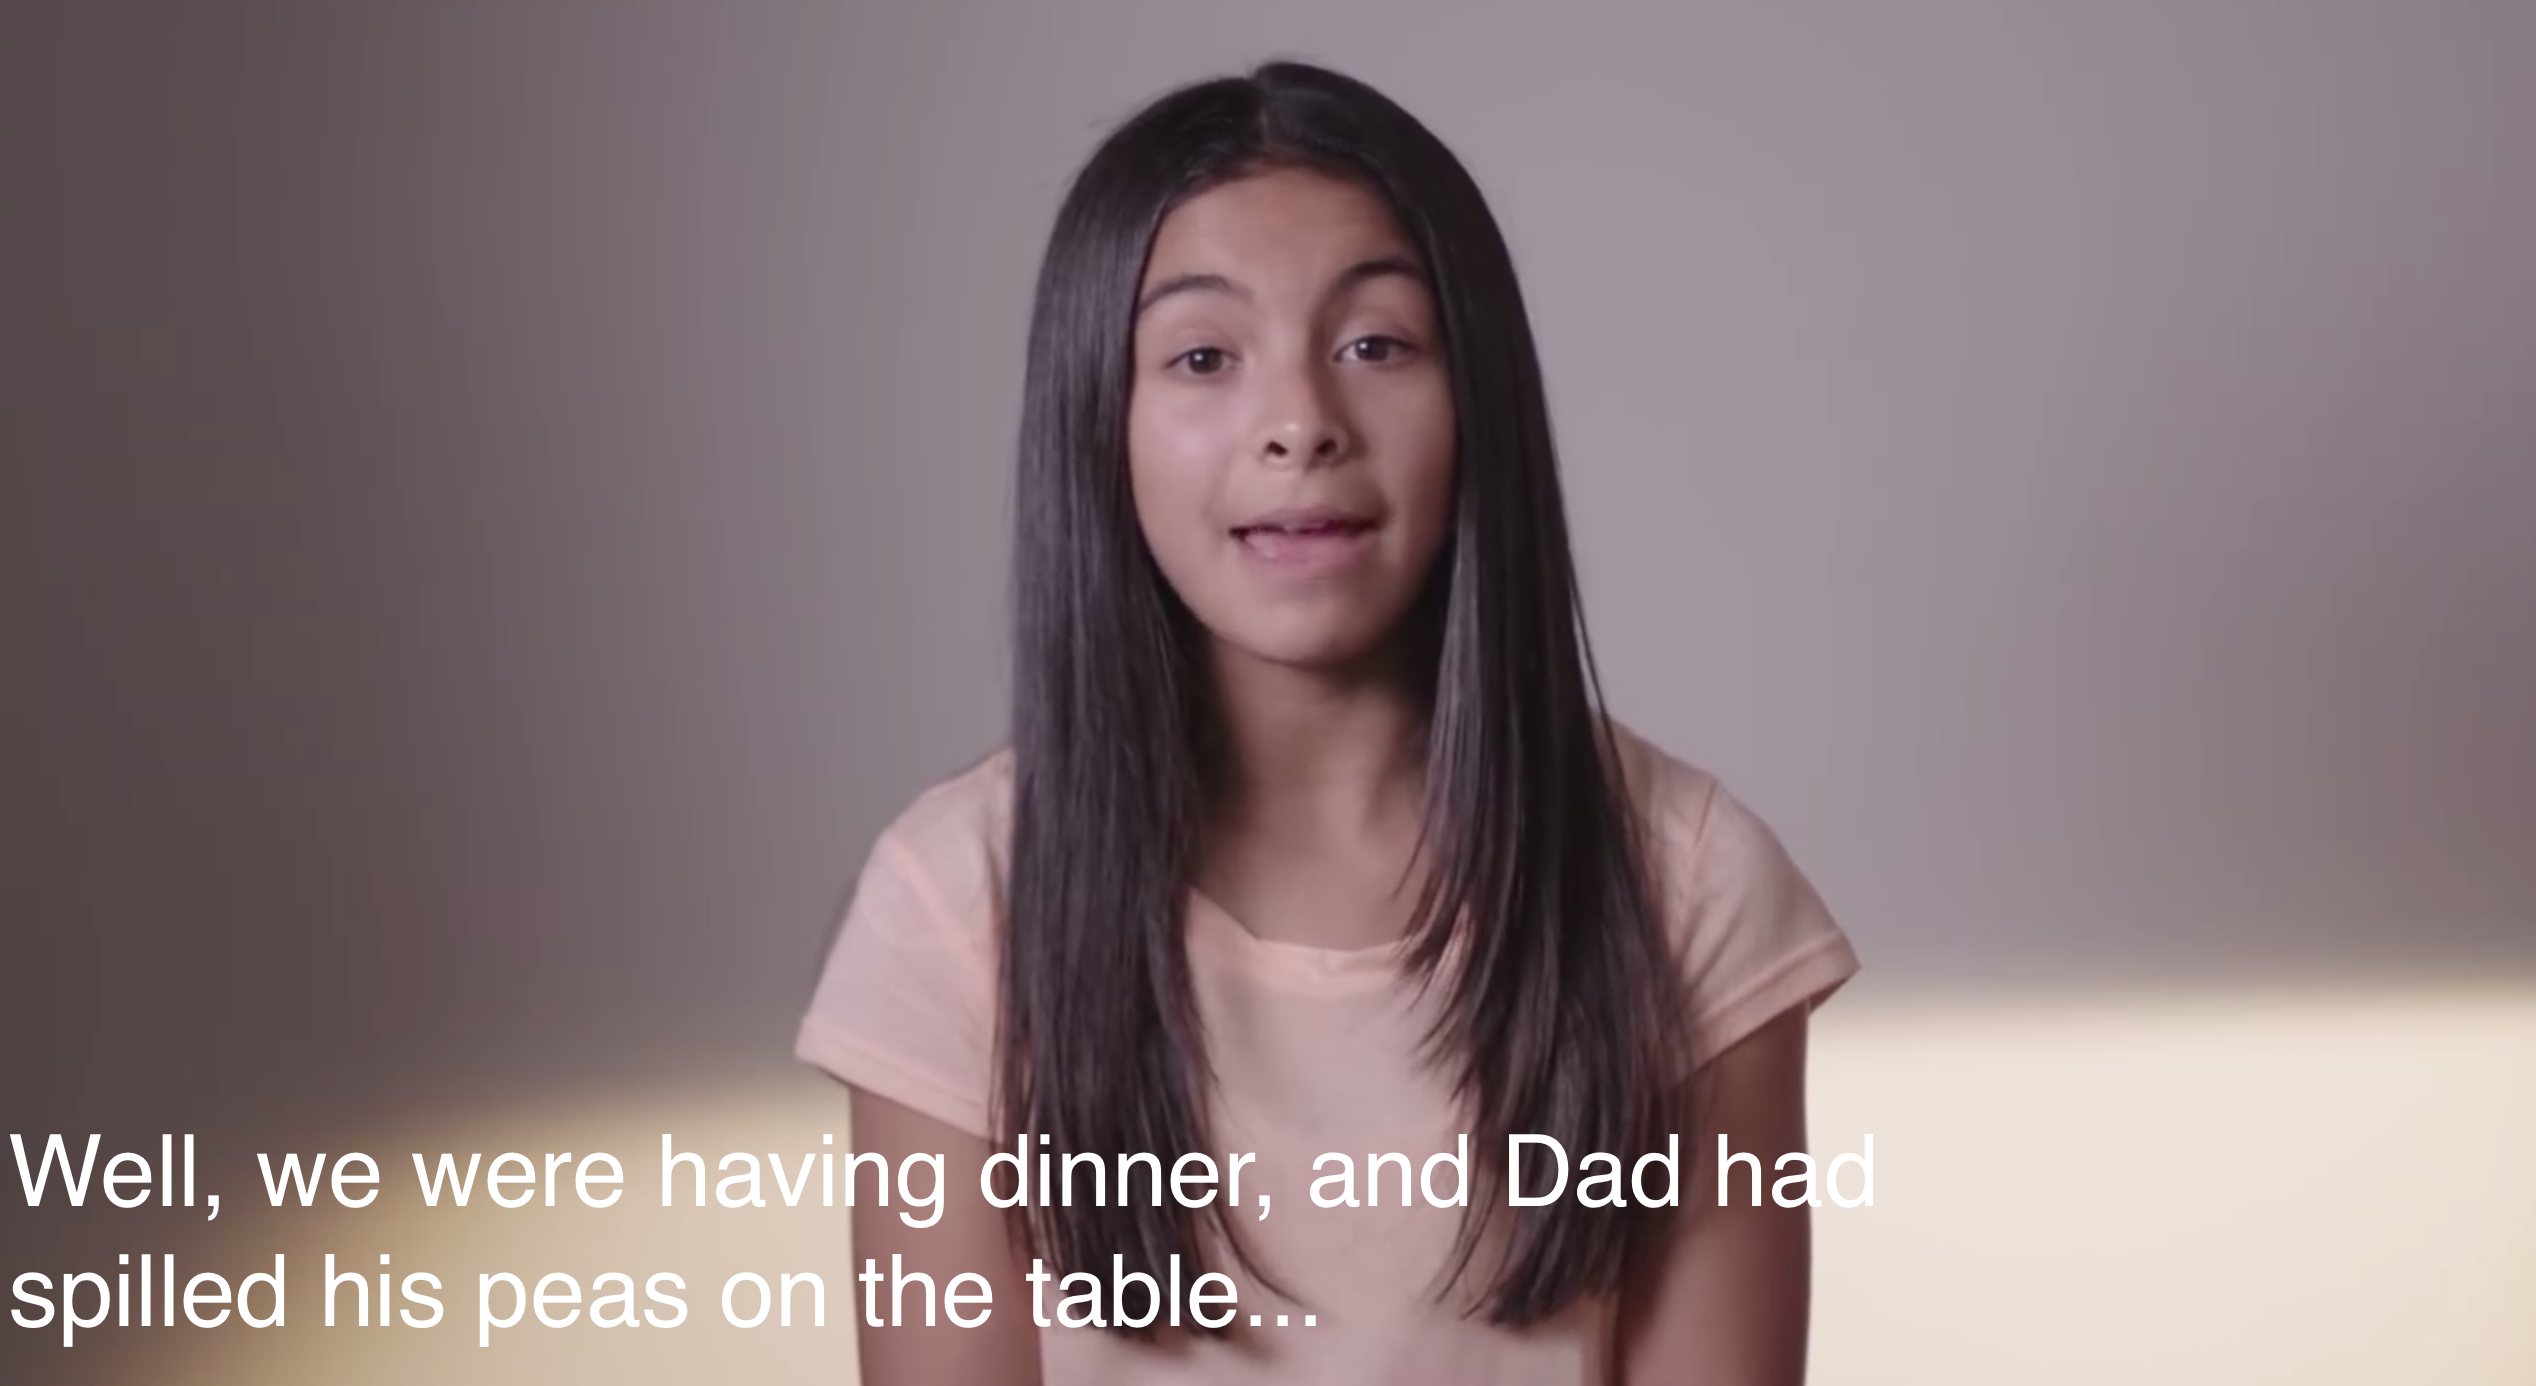 Dad Jokes Survivors Tell Their Stories